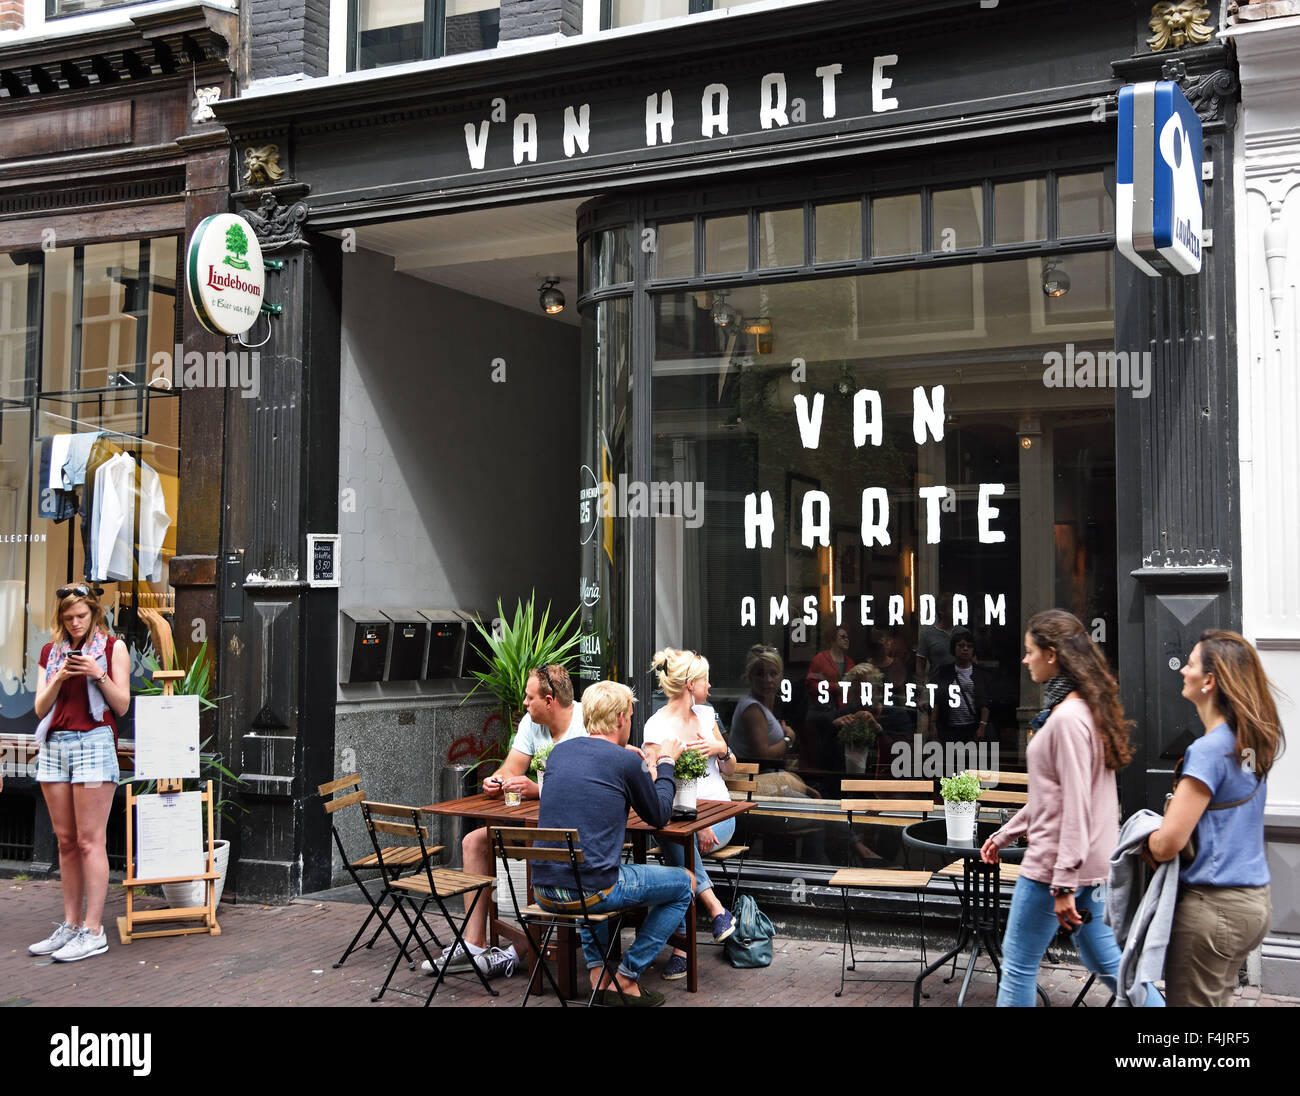 Van Harte - Pueblo Pequeño bar restaurante tienda de compras ( de Negen Straatjes - Nueve Callejuelas ) barrio Jordaan de Amsterdam Países Bajos Foto de stock